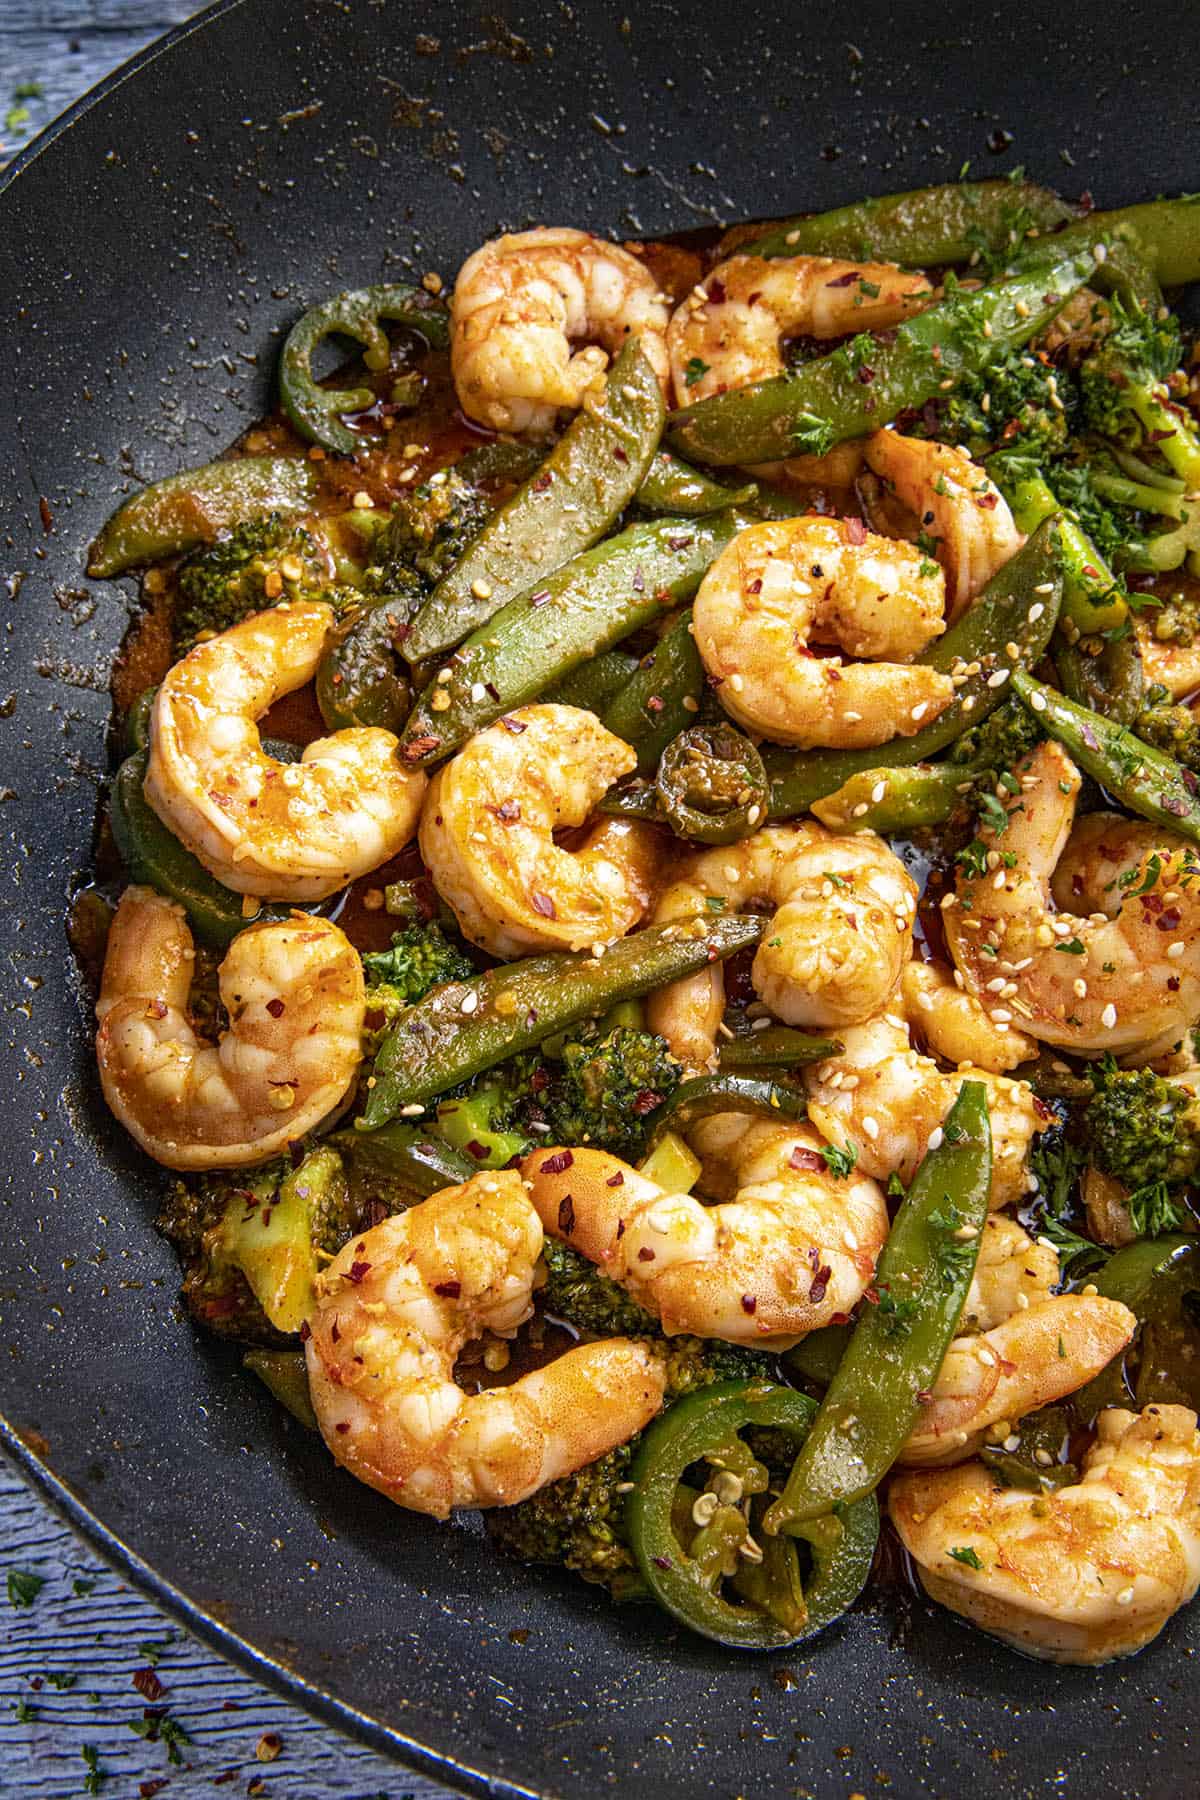 Spicy Shrimp Stir Fry Recipe in a wok